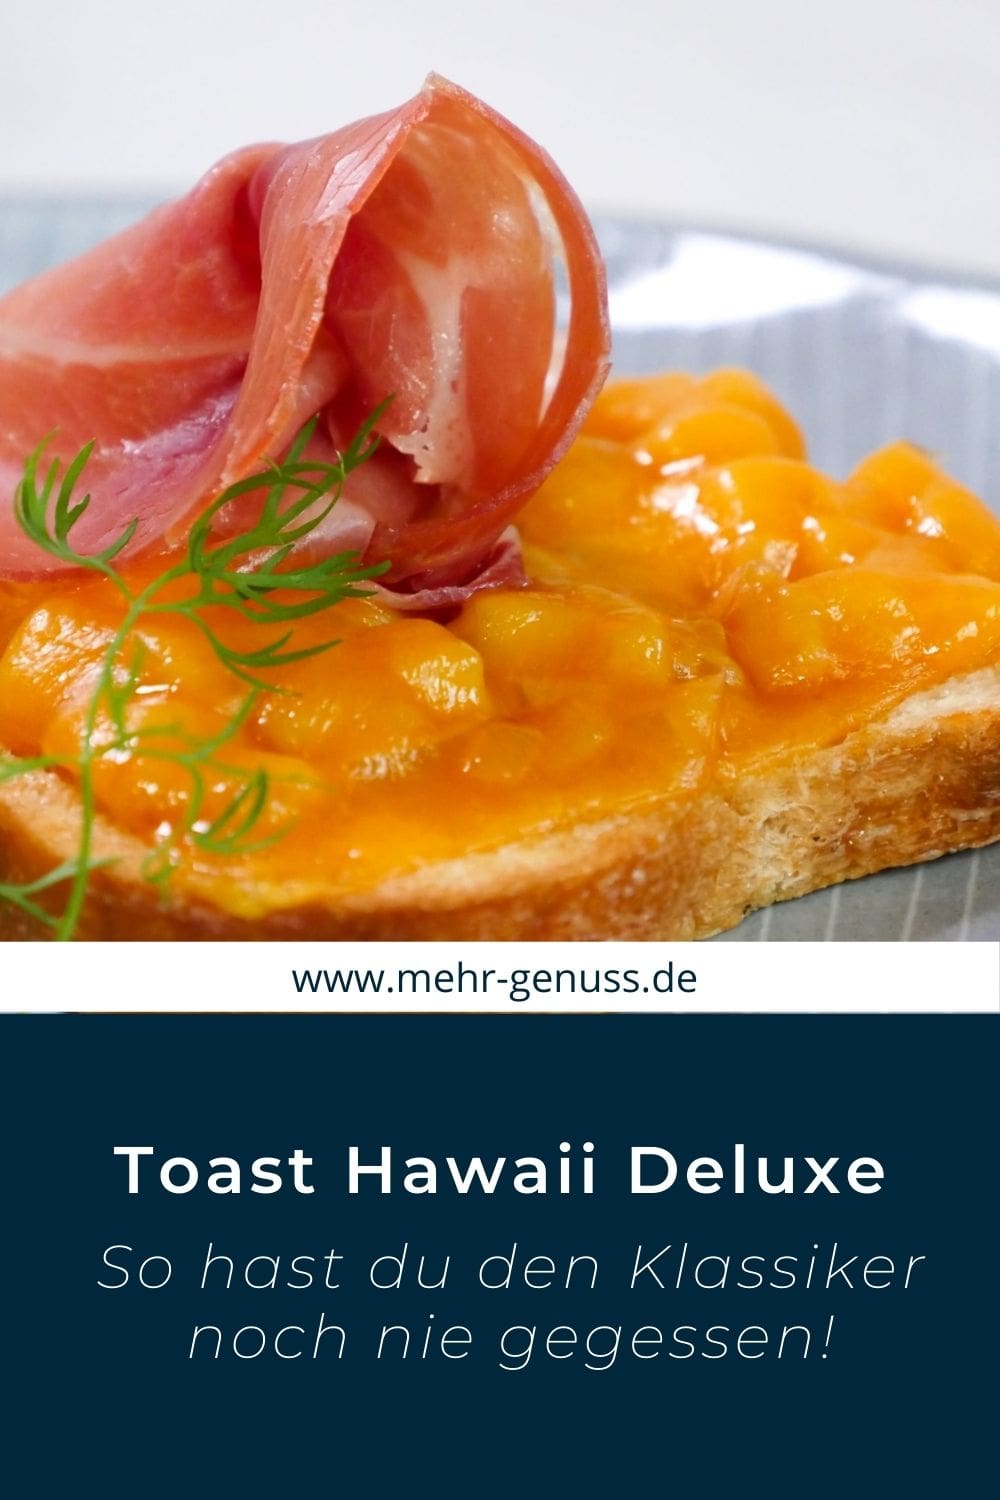 Toast Hawaii Deluxe auf Pinterest